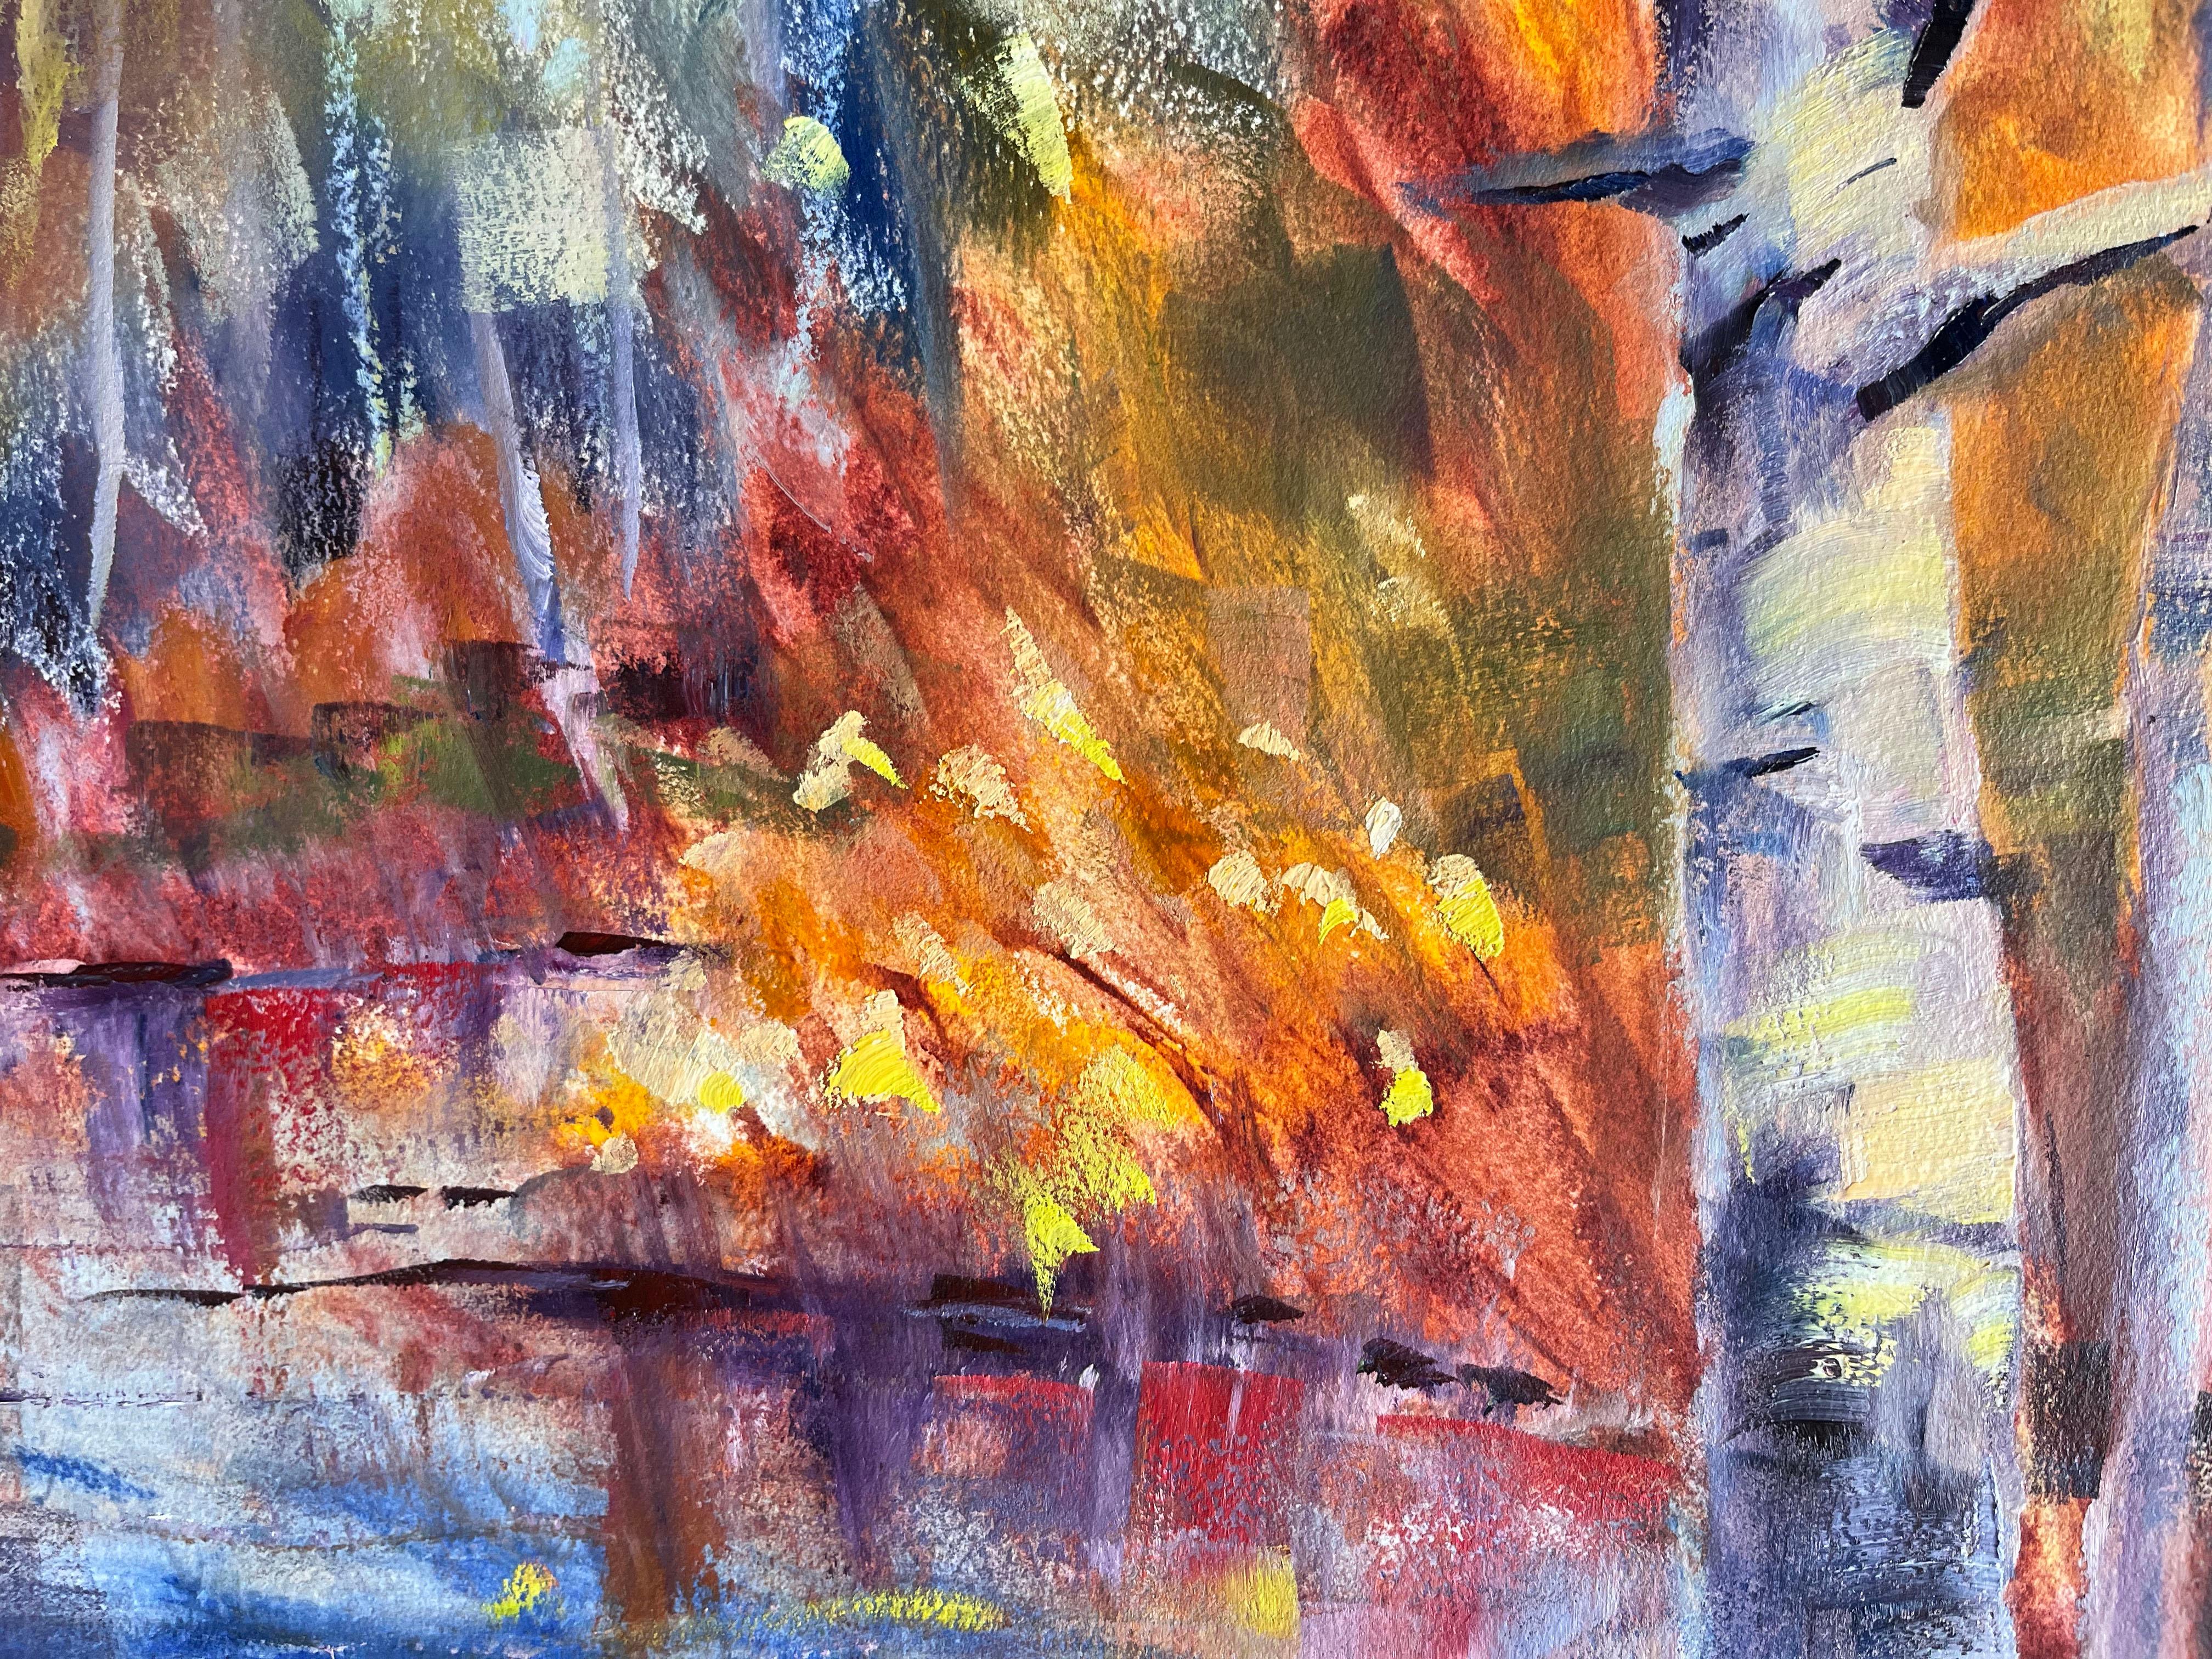 <p>Commentaires de l'artiste<br>L'artiste Melissa Gannon projette un paysage forestier expressionniste dans des teintes prismatiques vives. Des nuances d'orange vif, de rouge et de jaune emplissent la pièce d'énergie. Melissa fait preuve d'une